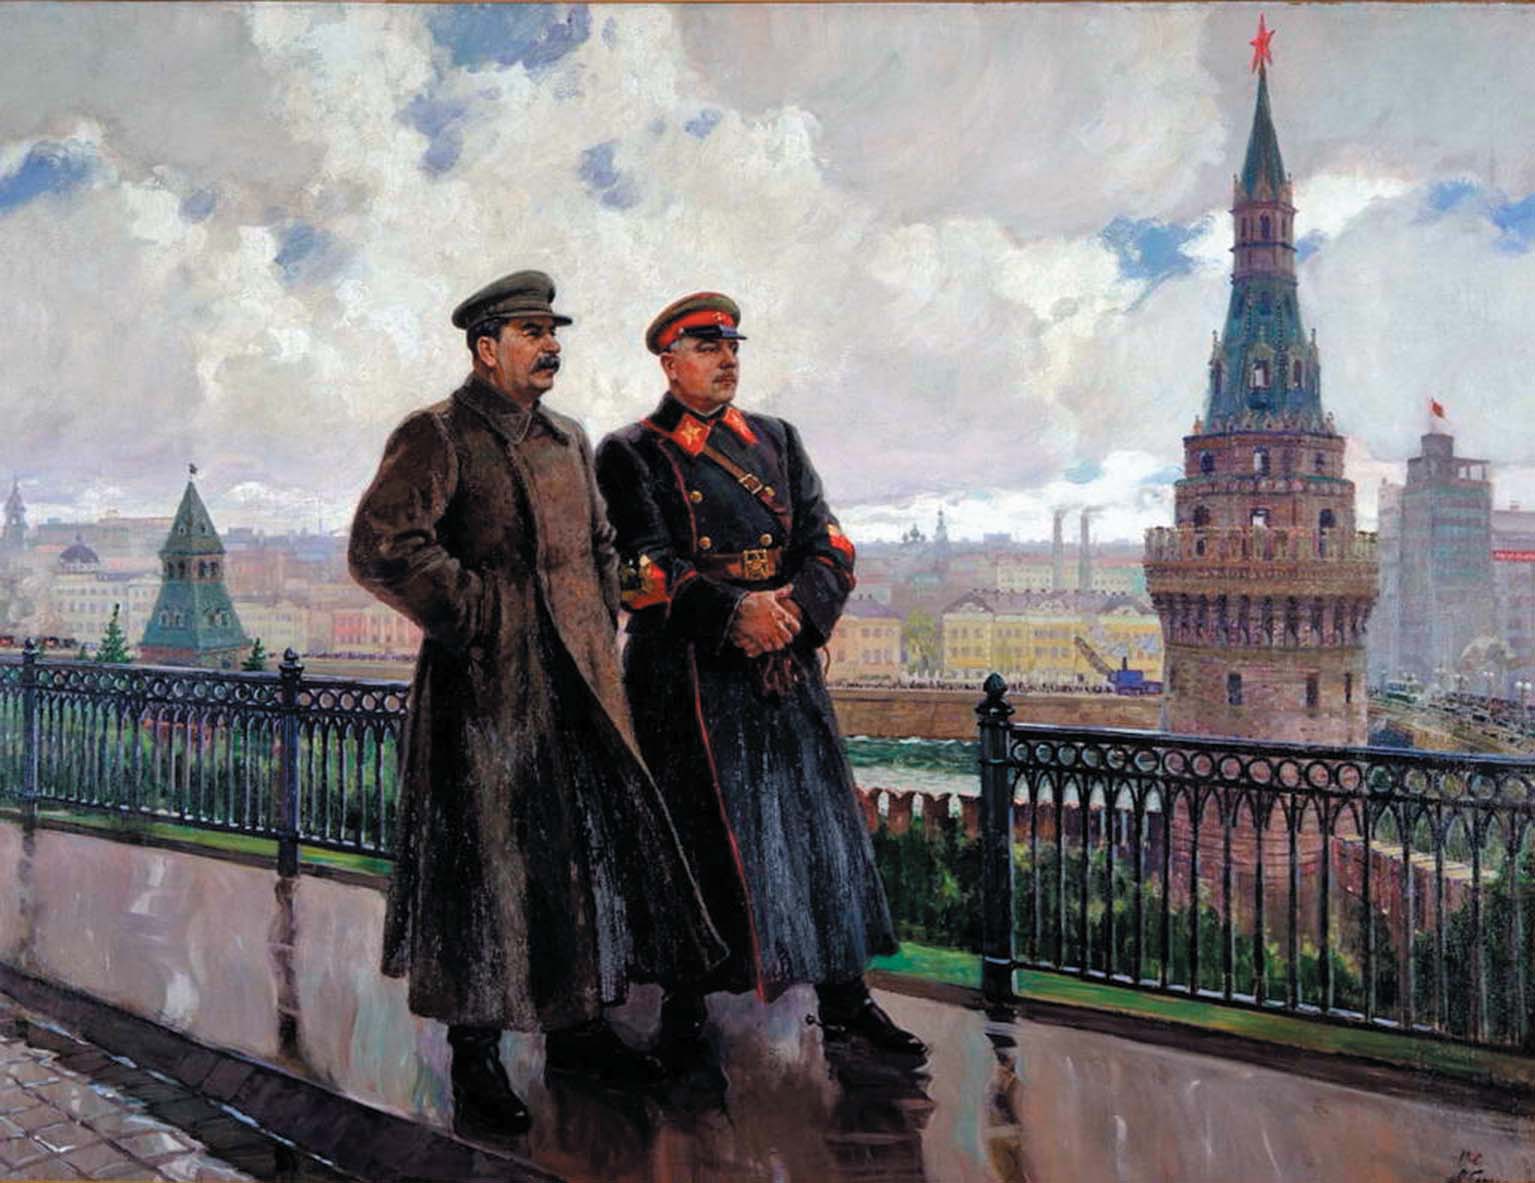 Иосиф Сталин и Климент Ворошилов в Кремле, фрагмент. Александр Герасимов, 1938 год.